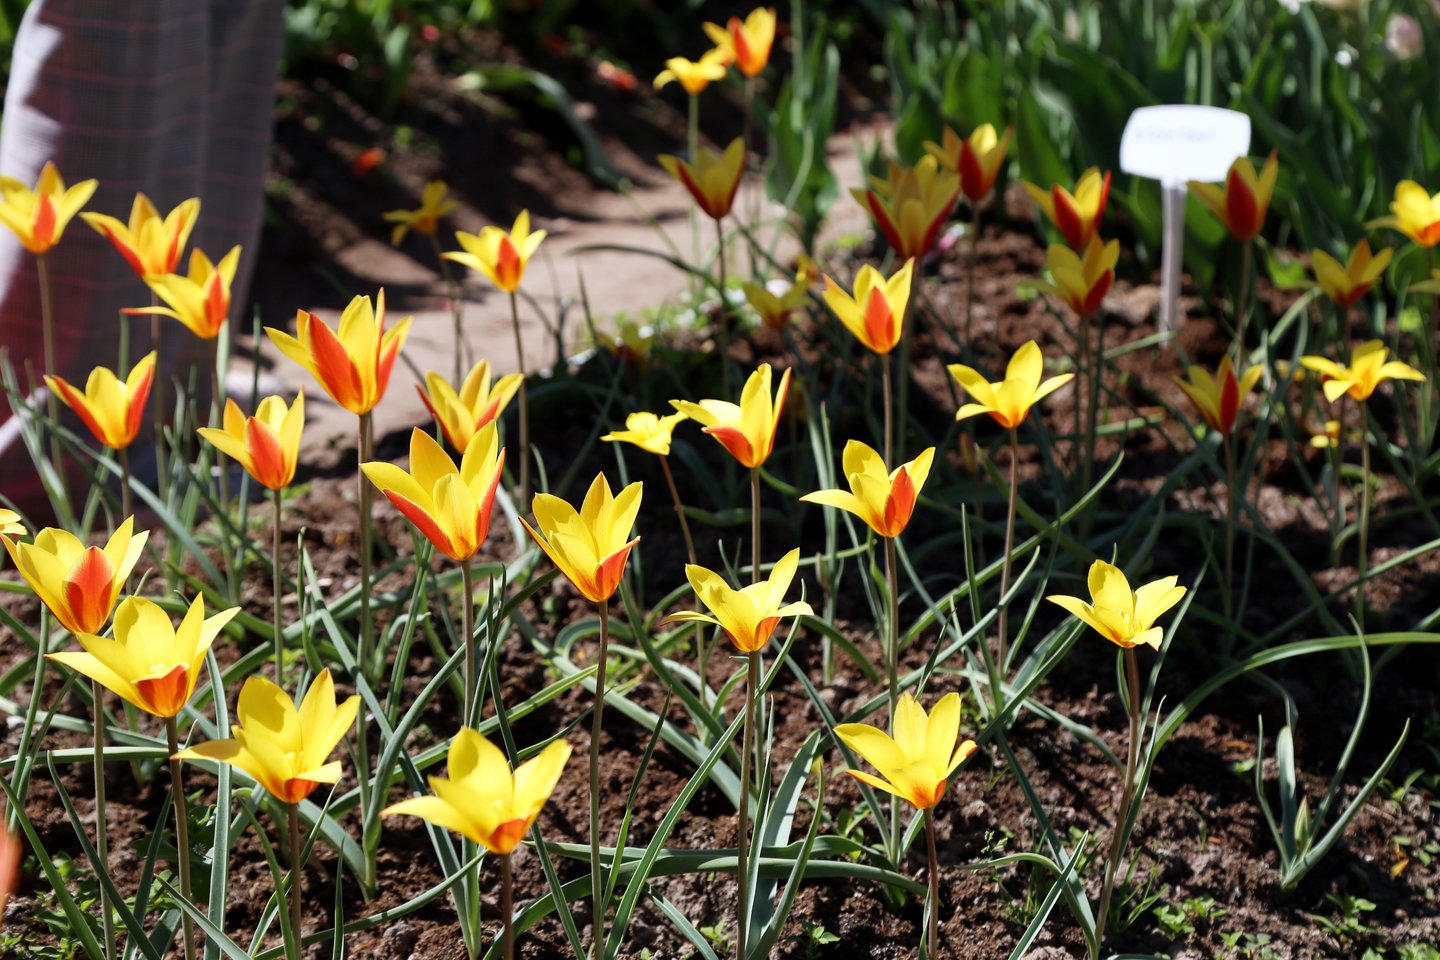  Burbiškio dvare žydi apie 400 rūšių tulpių. <br> R.Vitkaus nuotr.